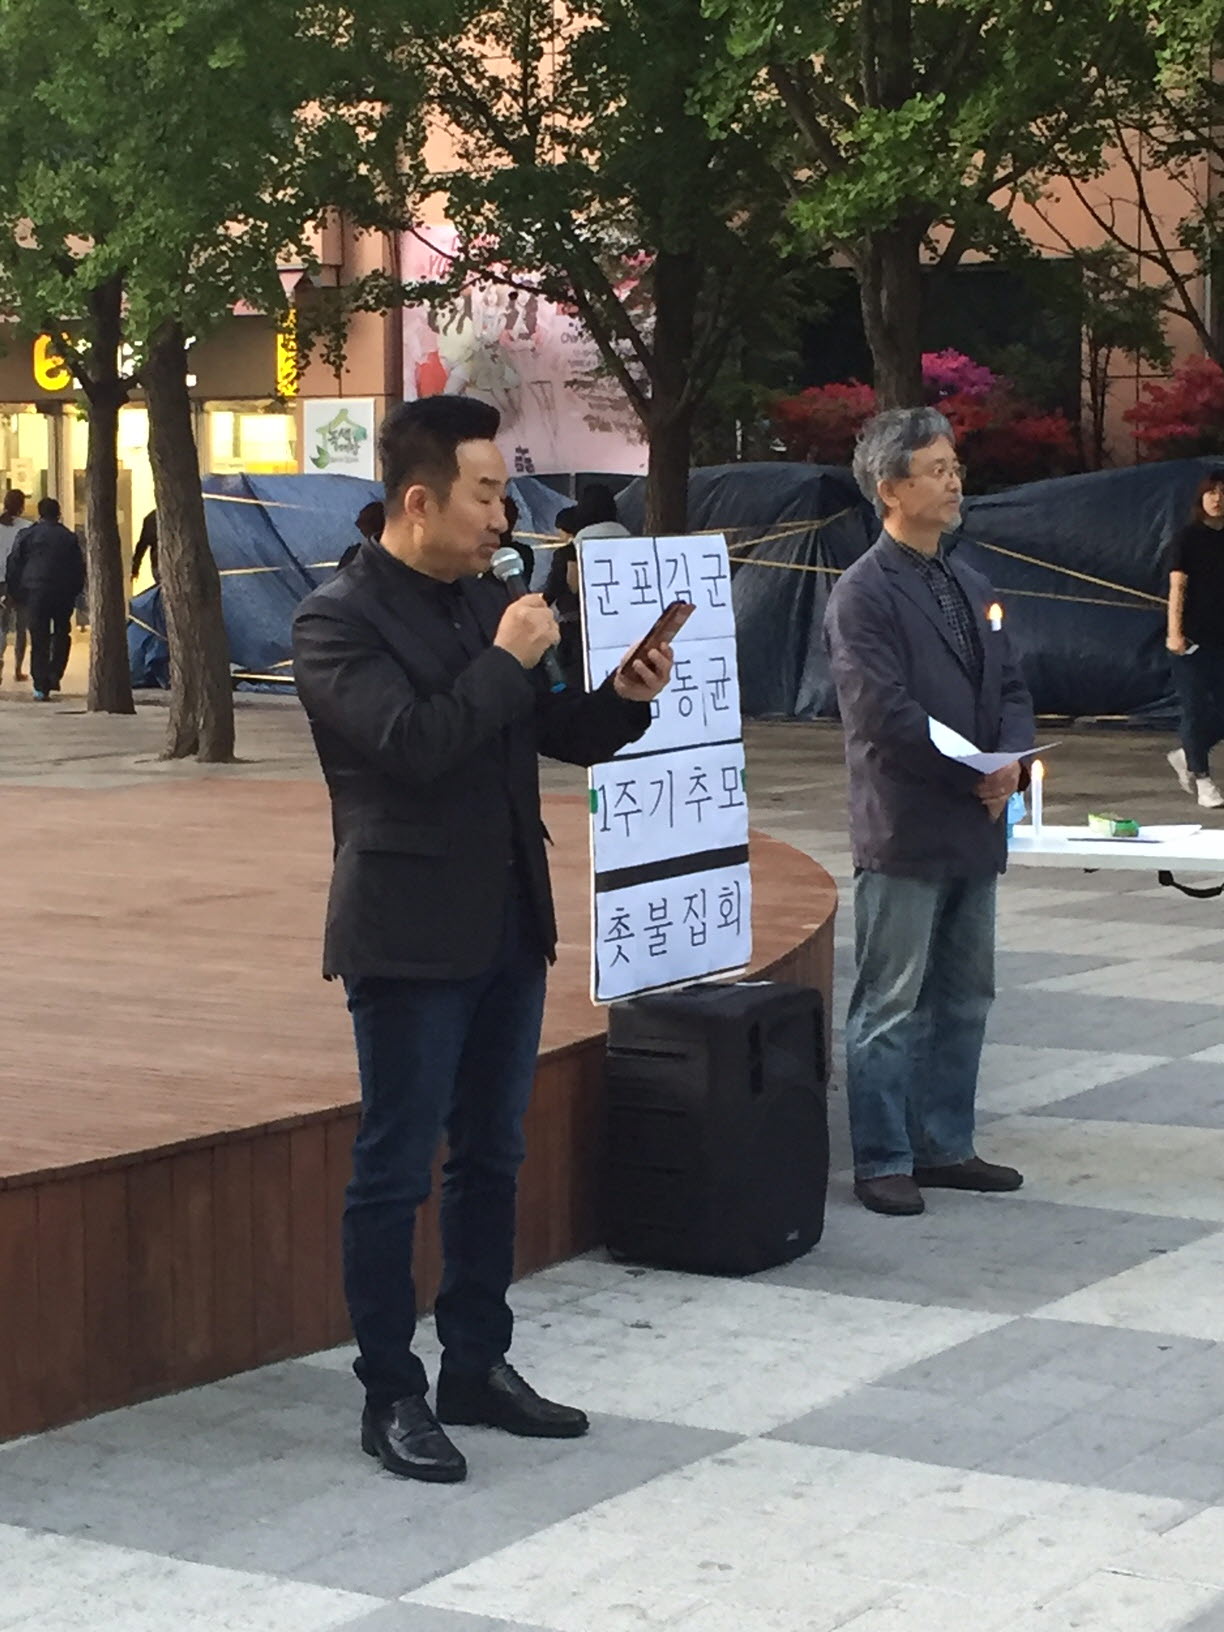 5월 6일 산본역 앞 광장에서 열린 아들의 1주기 추모행사에 참여한 김용만(왼쪽) 님